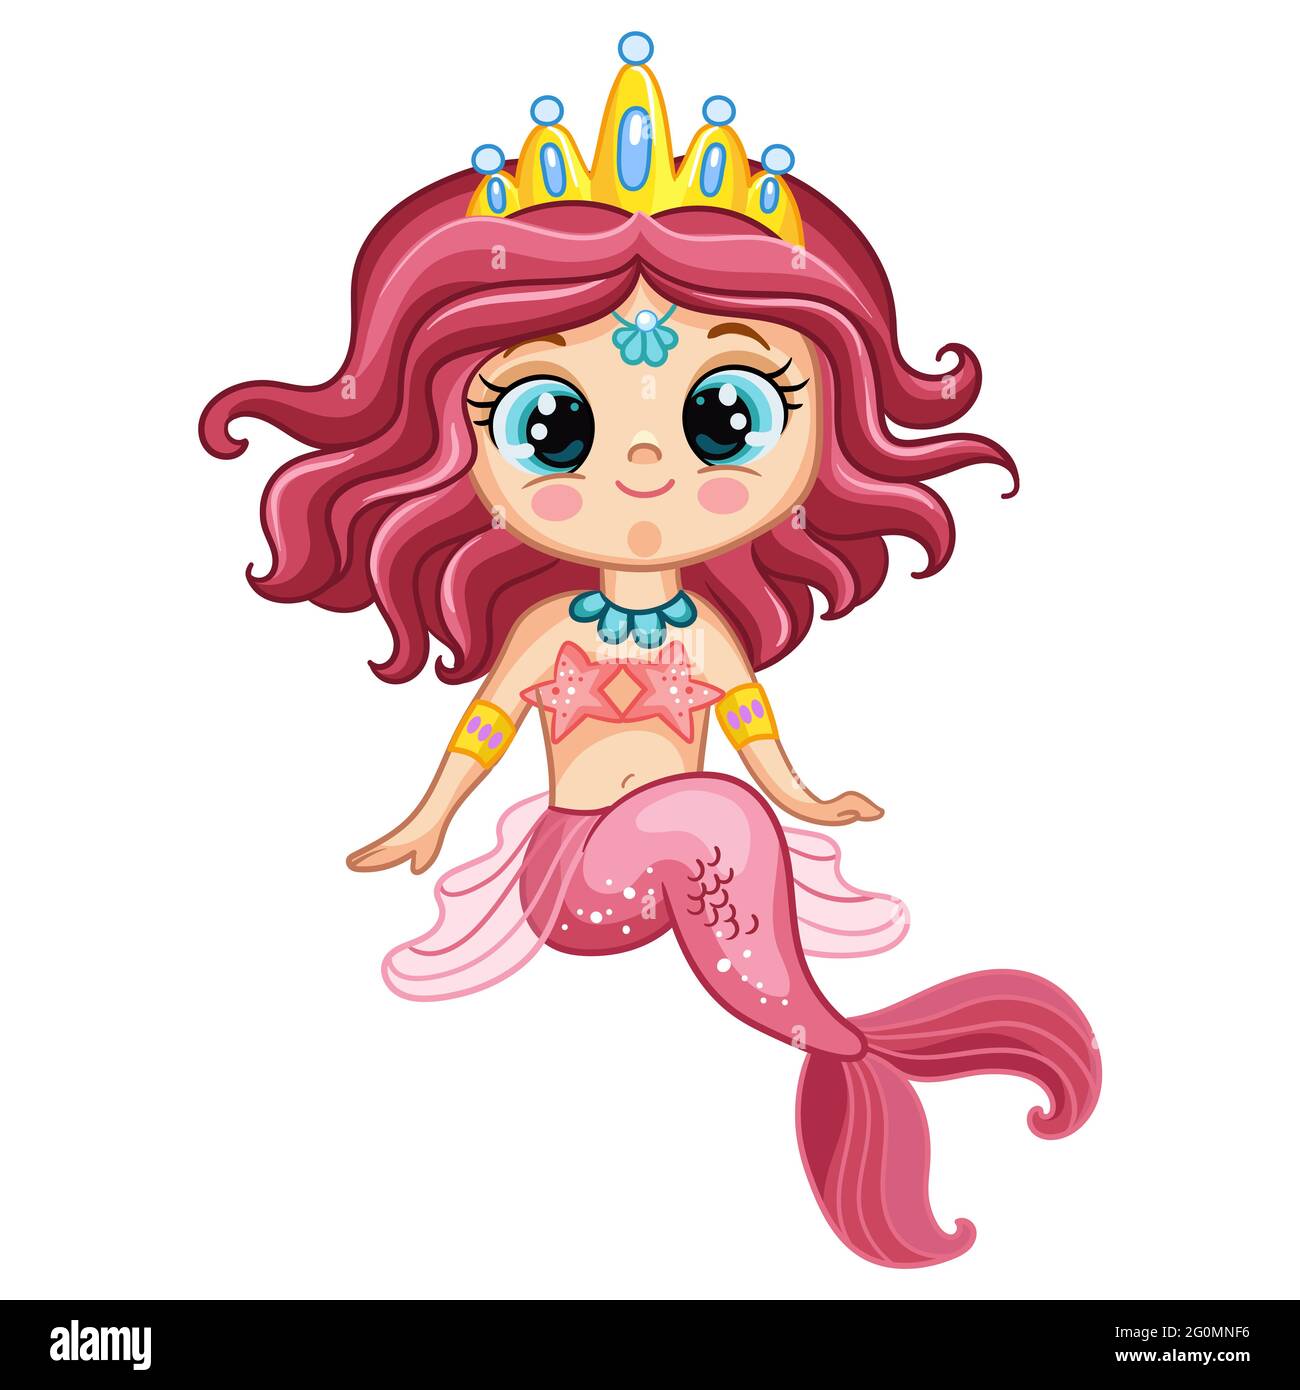 Carino piccola sirena seduta con coda rosa e corona. Personaggio cartoon. Immagine vettoriale isolata su sfondo bianco. Per la t-shirt, stampare una Illustrazione Vettoriale